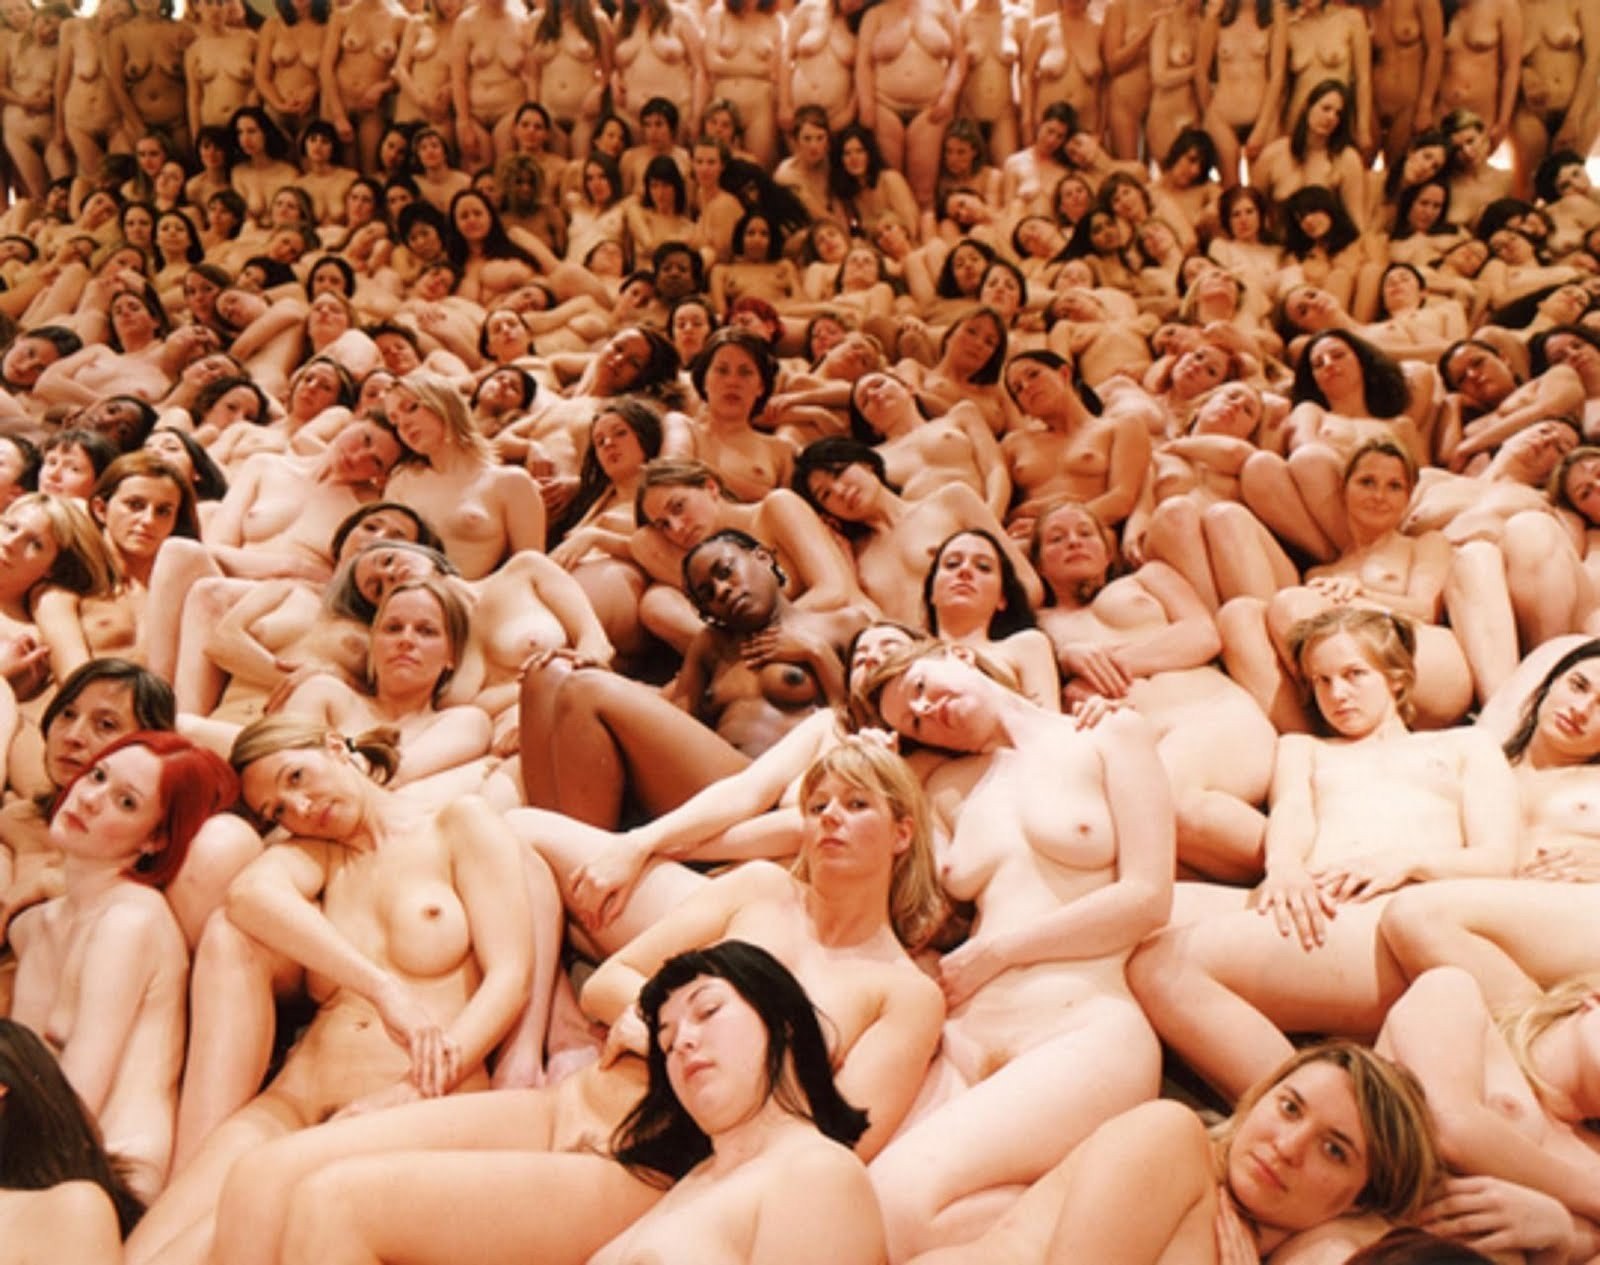 100 naked women